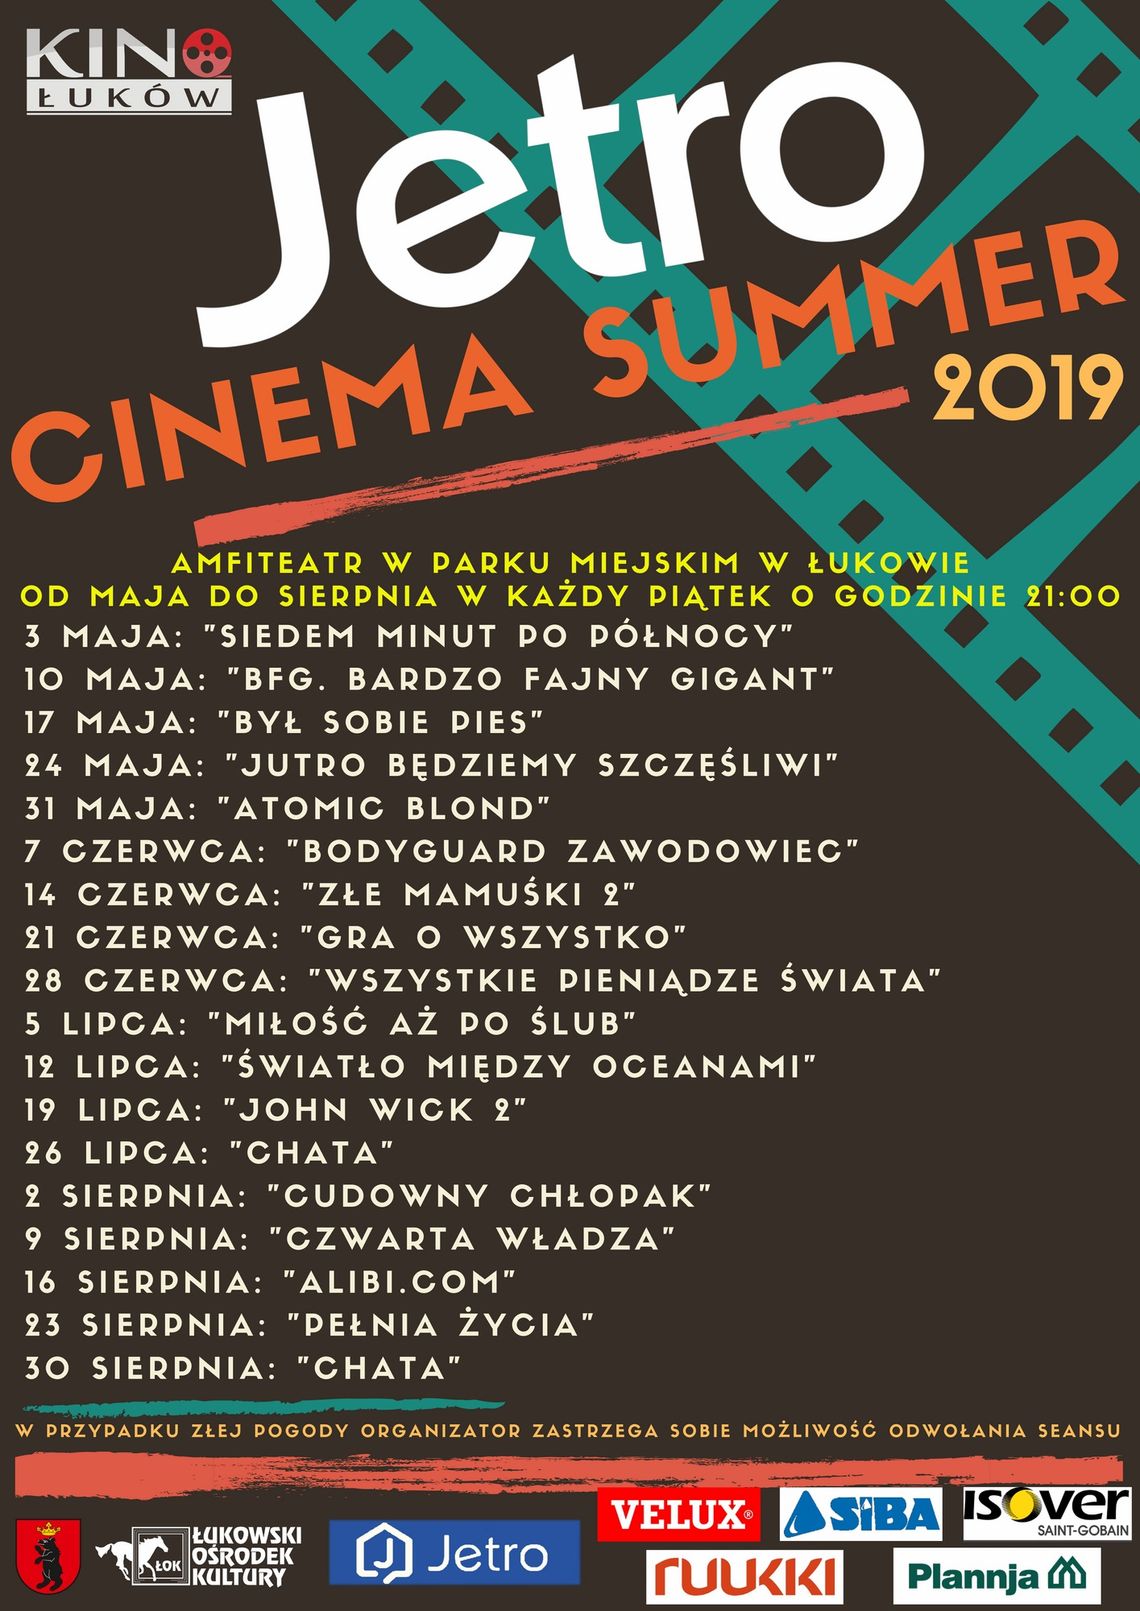 JETRO CINEMA SUMMER - „Jutro będziemy szczęśliwi”